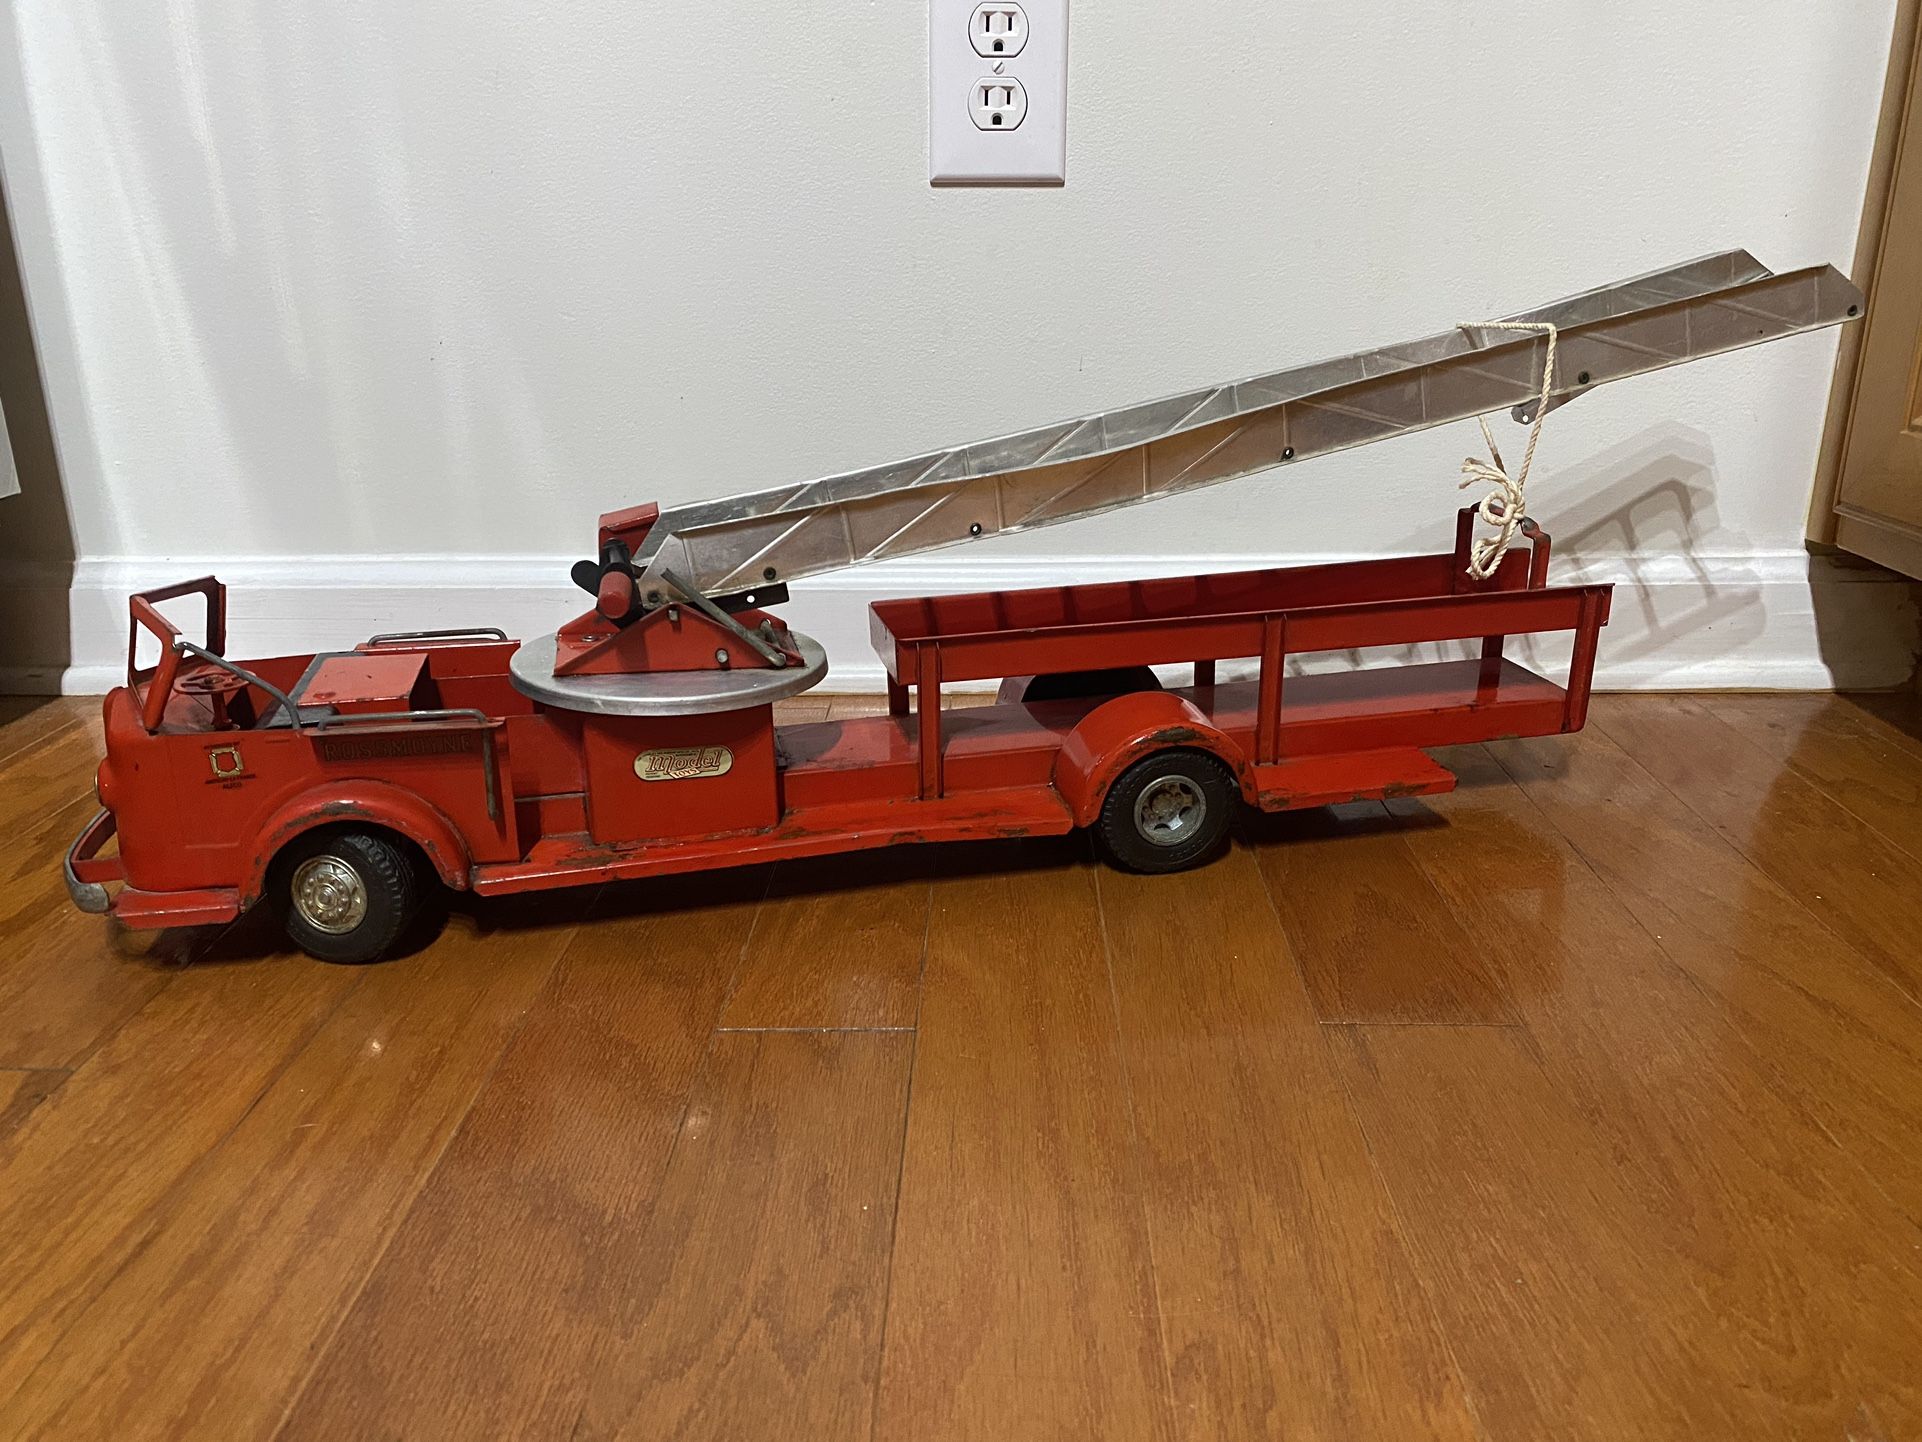 Doepke Rossmoyne Fire Engine Aerial Ladder Truck 28" Vintage/Antique